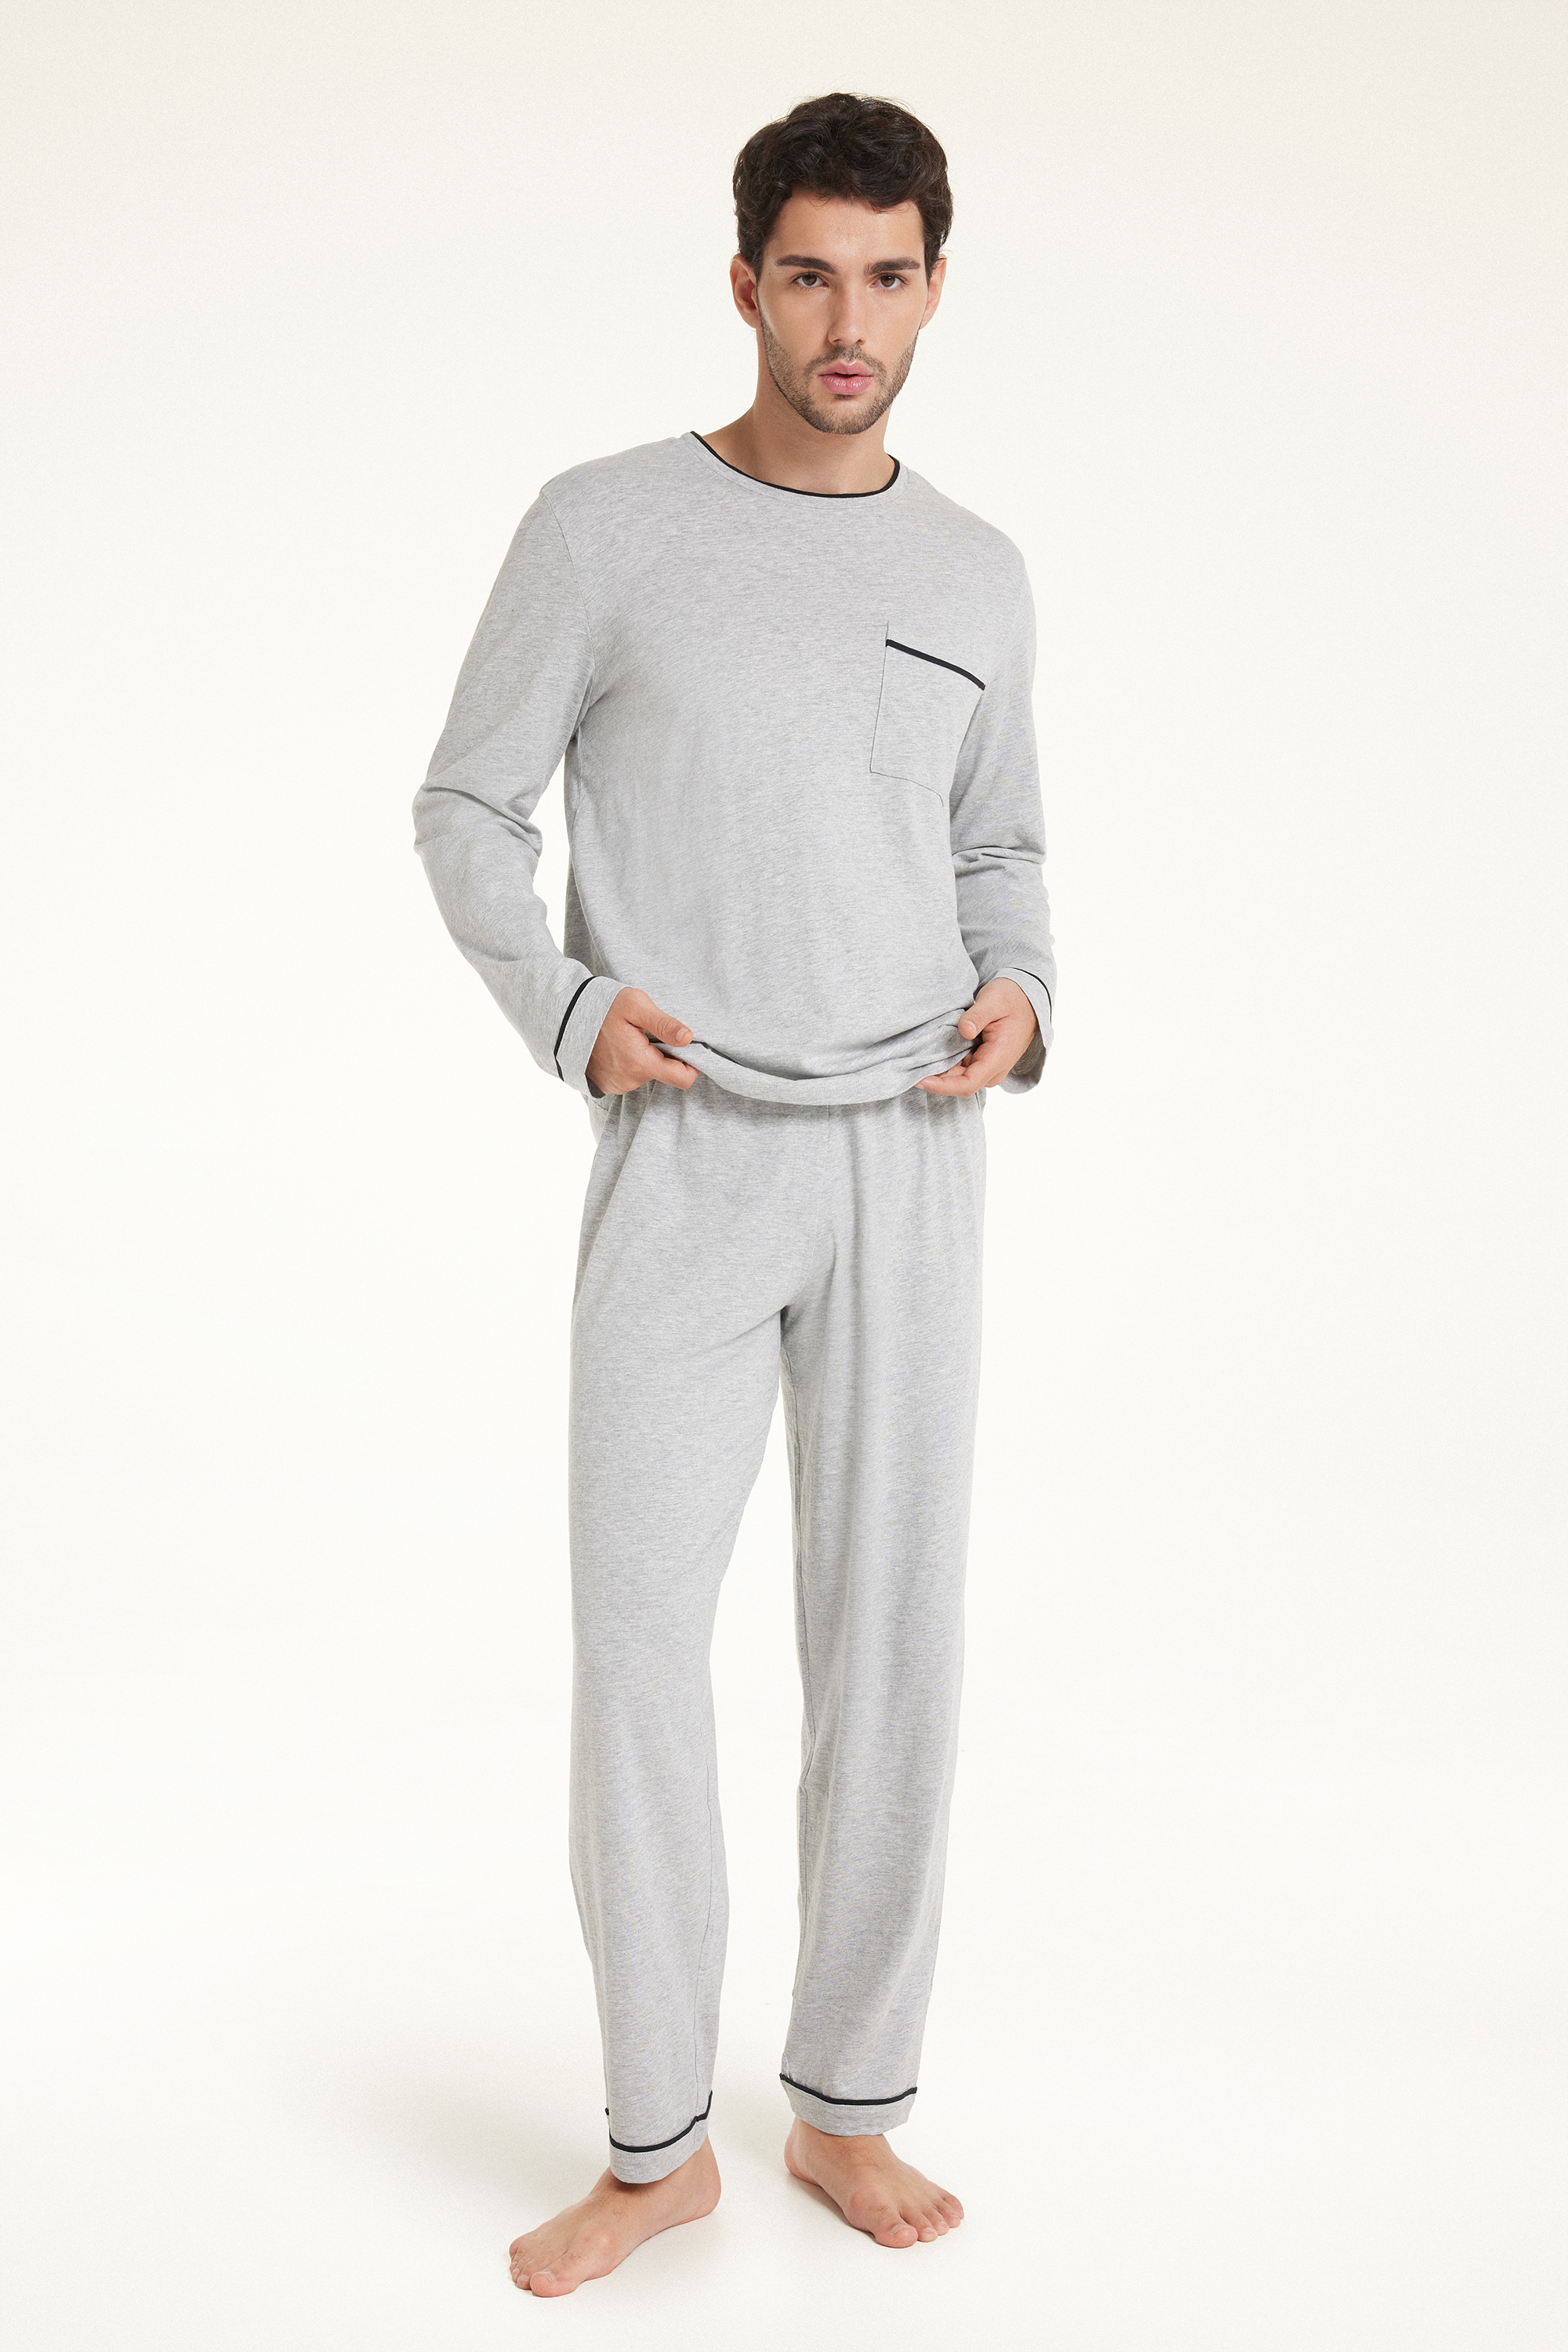 Langer Herrenpyjama aus Baumwolle mit Paspelierung